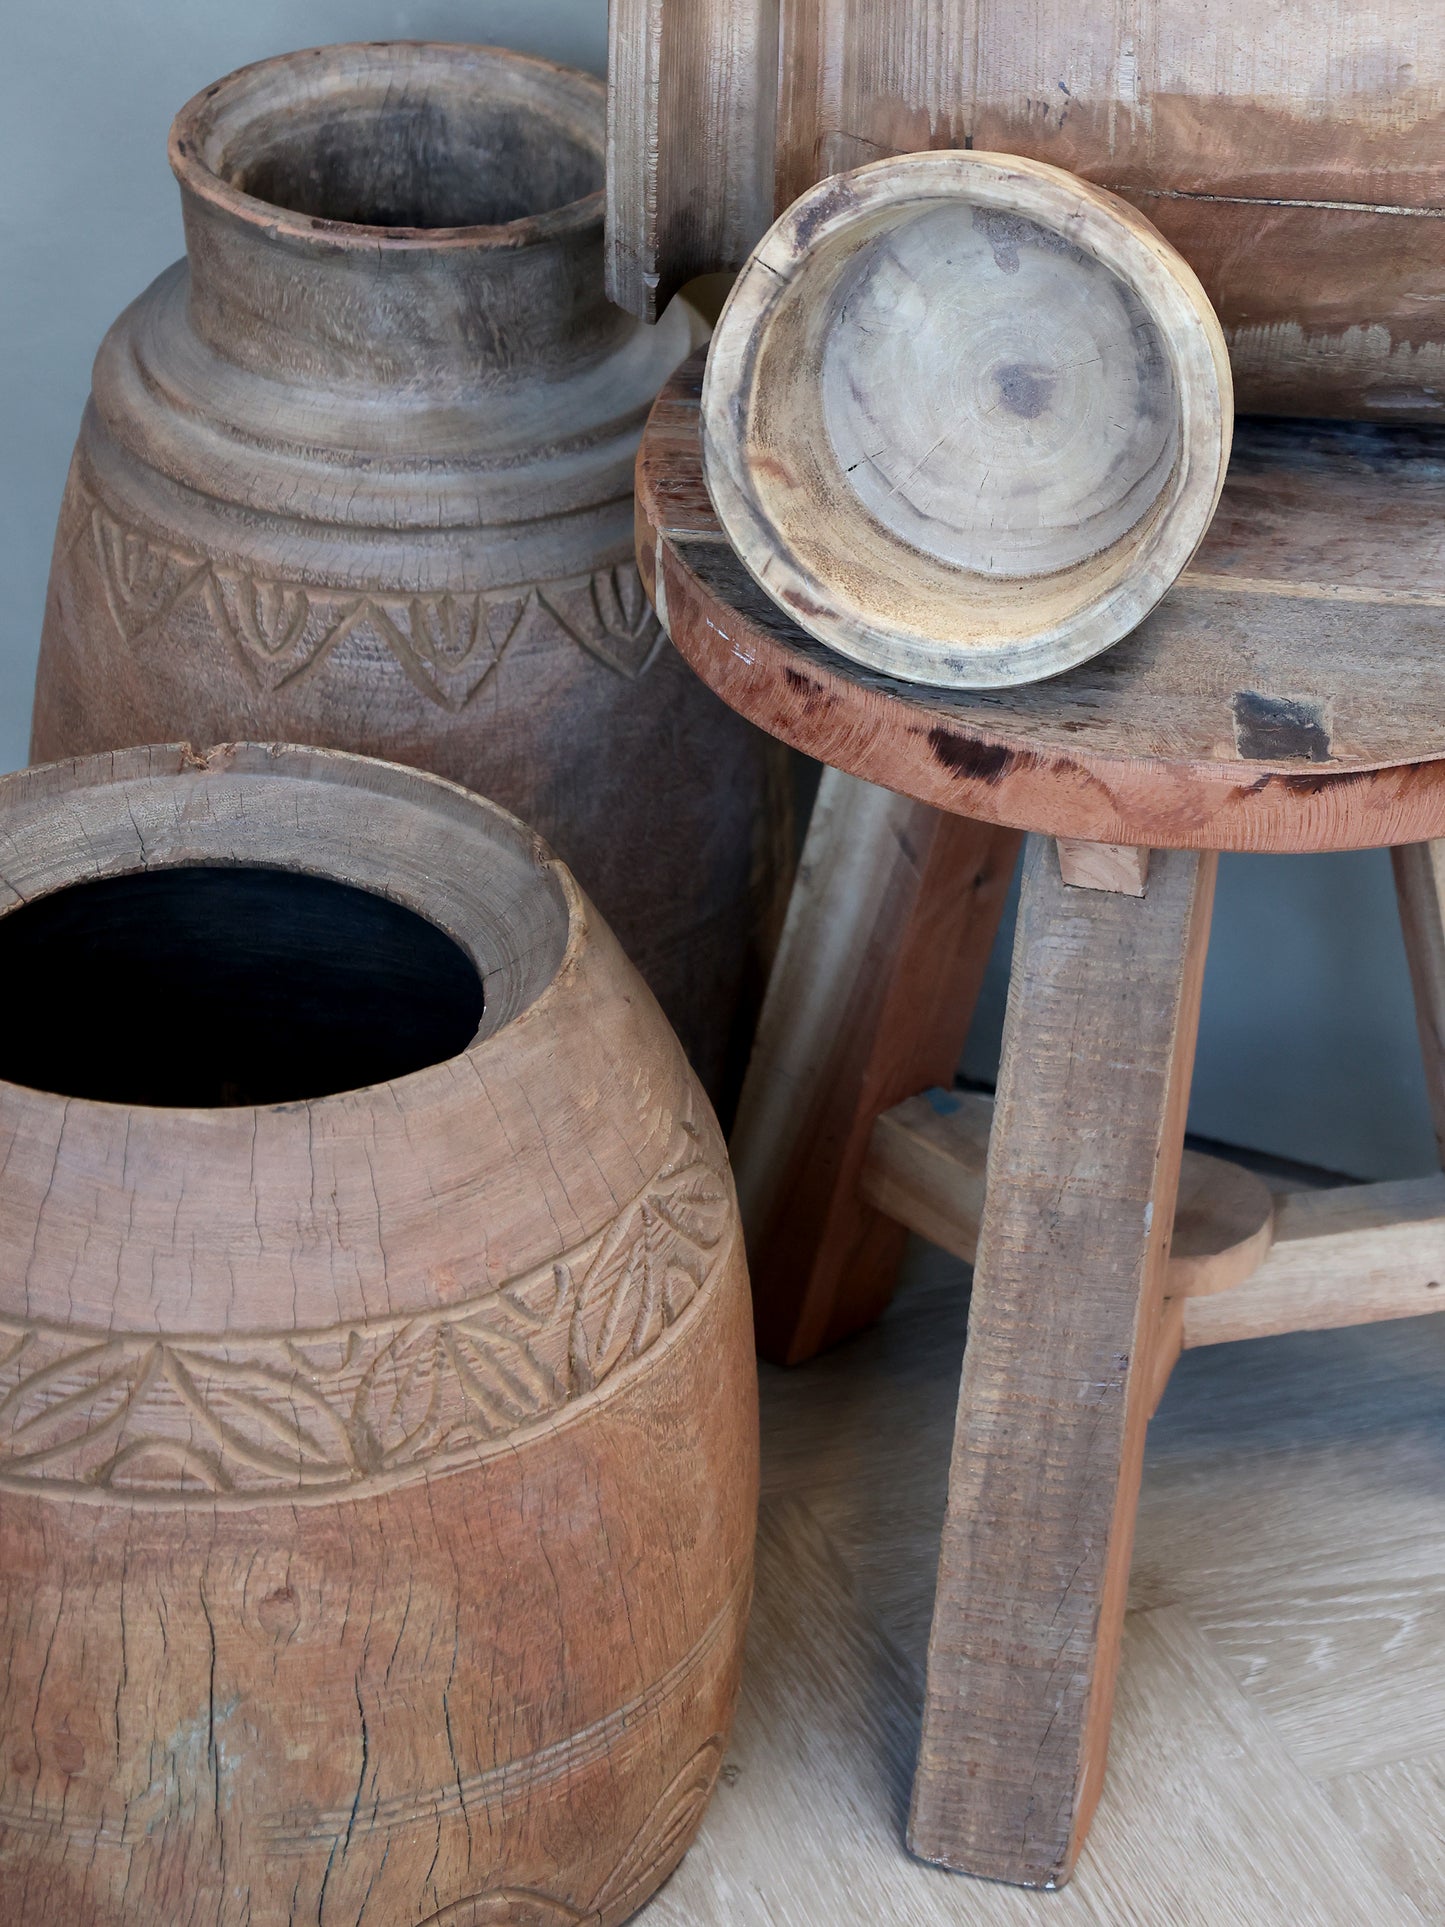 Grimaud Wooden Vase- For Deco 32cm